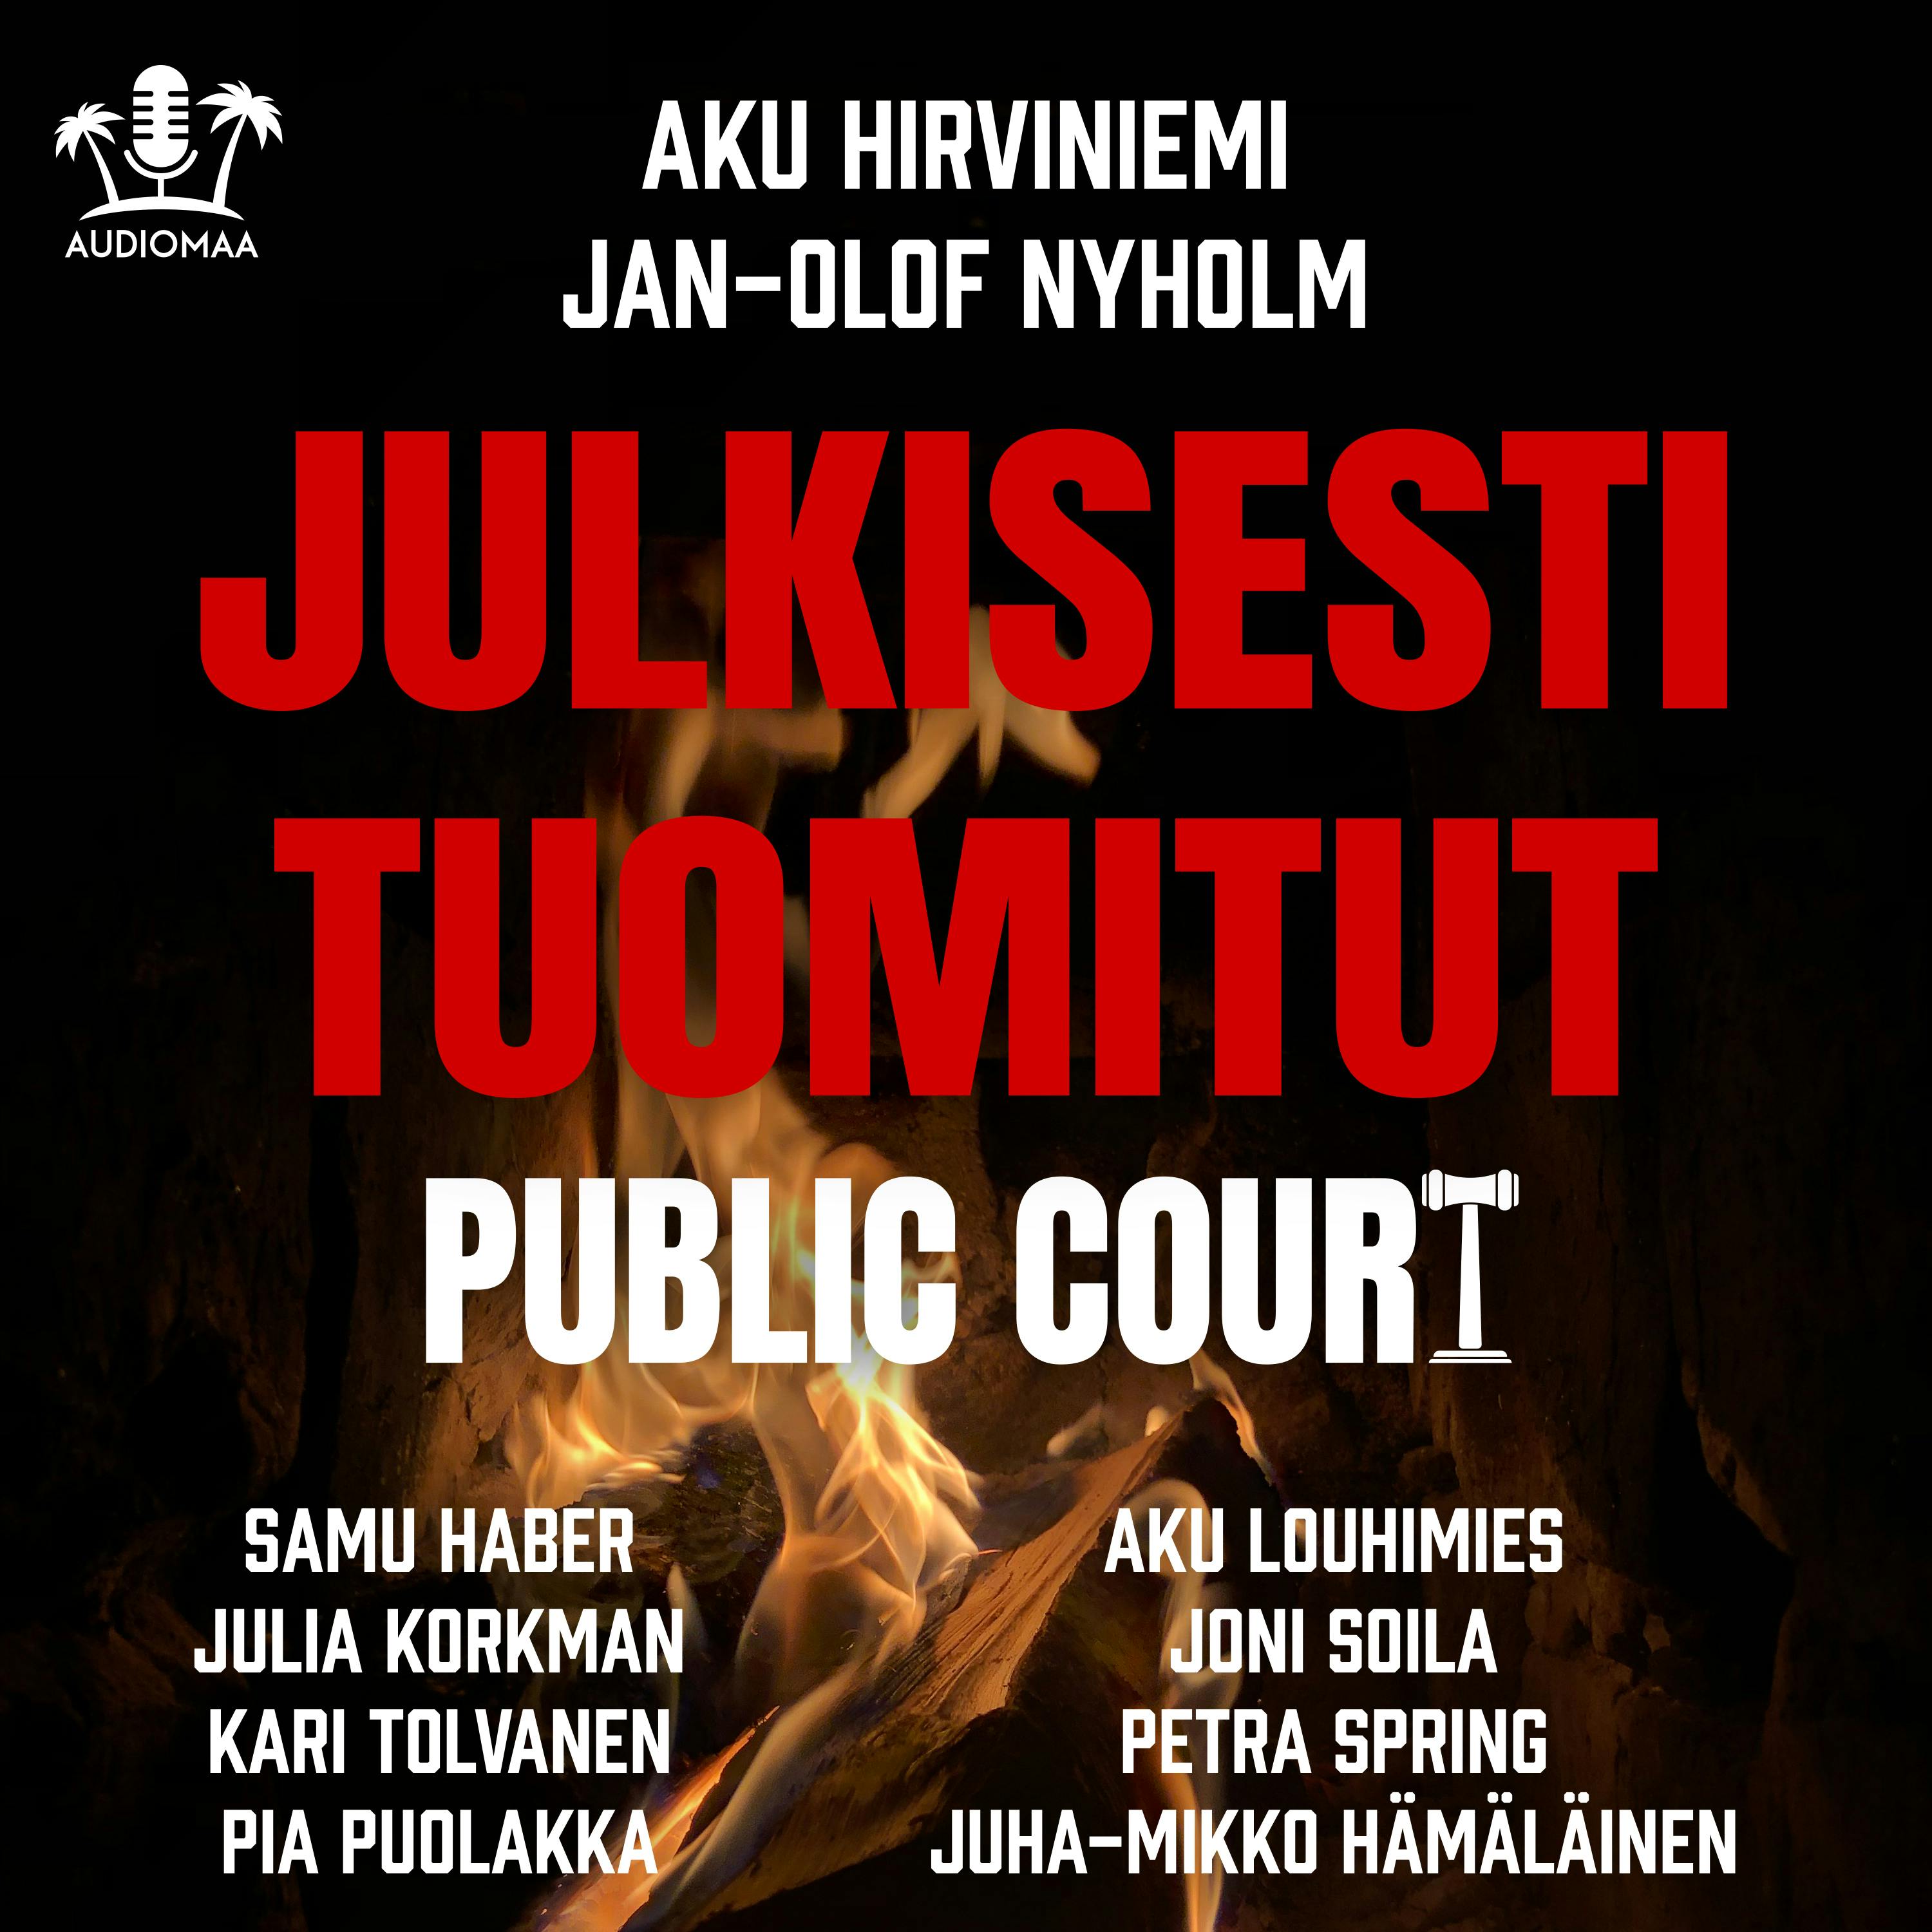 Julkisesti tuomitut: Public court - Aku Hirviniemi, Jan-Olof Nyholm